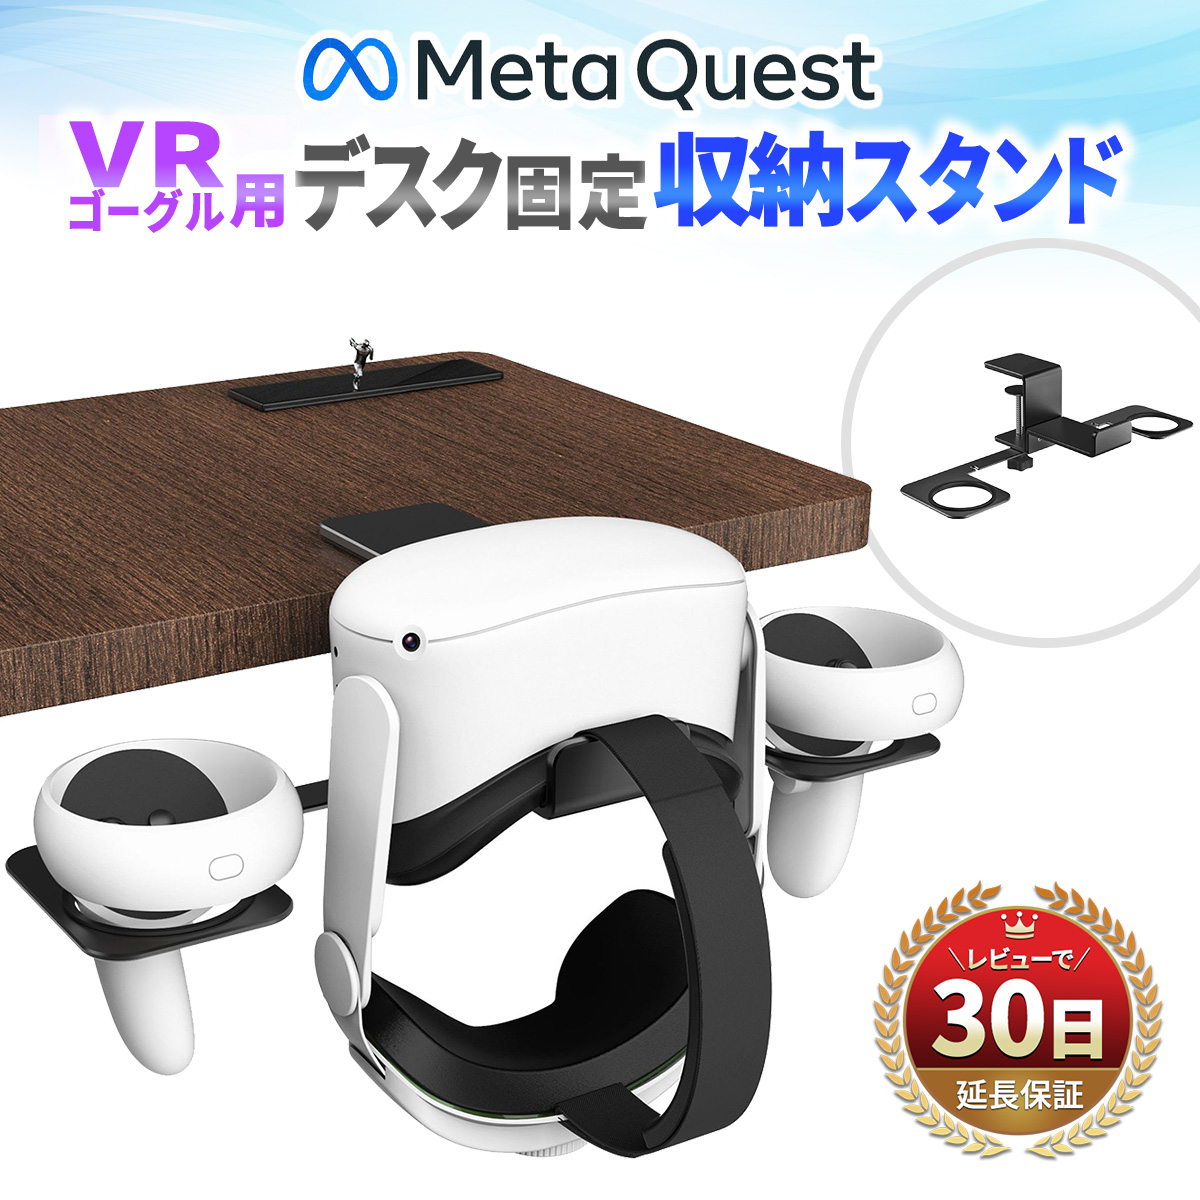 Meta Quest VRゴーグル用 デスク固定収納スタンド」が楽天スーパーDEAL